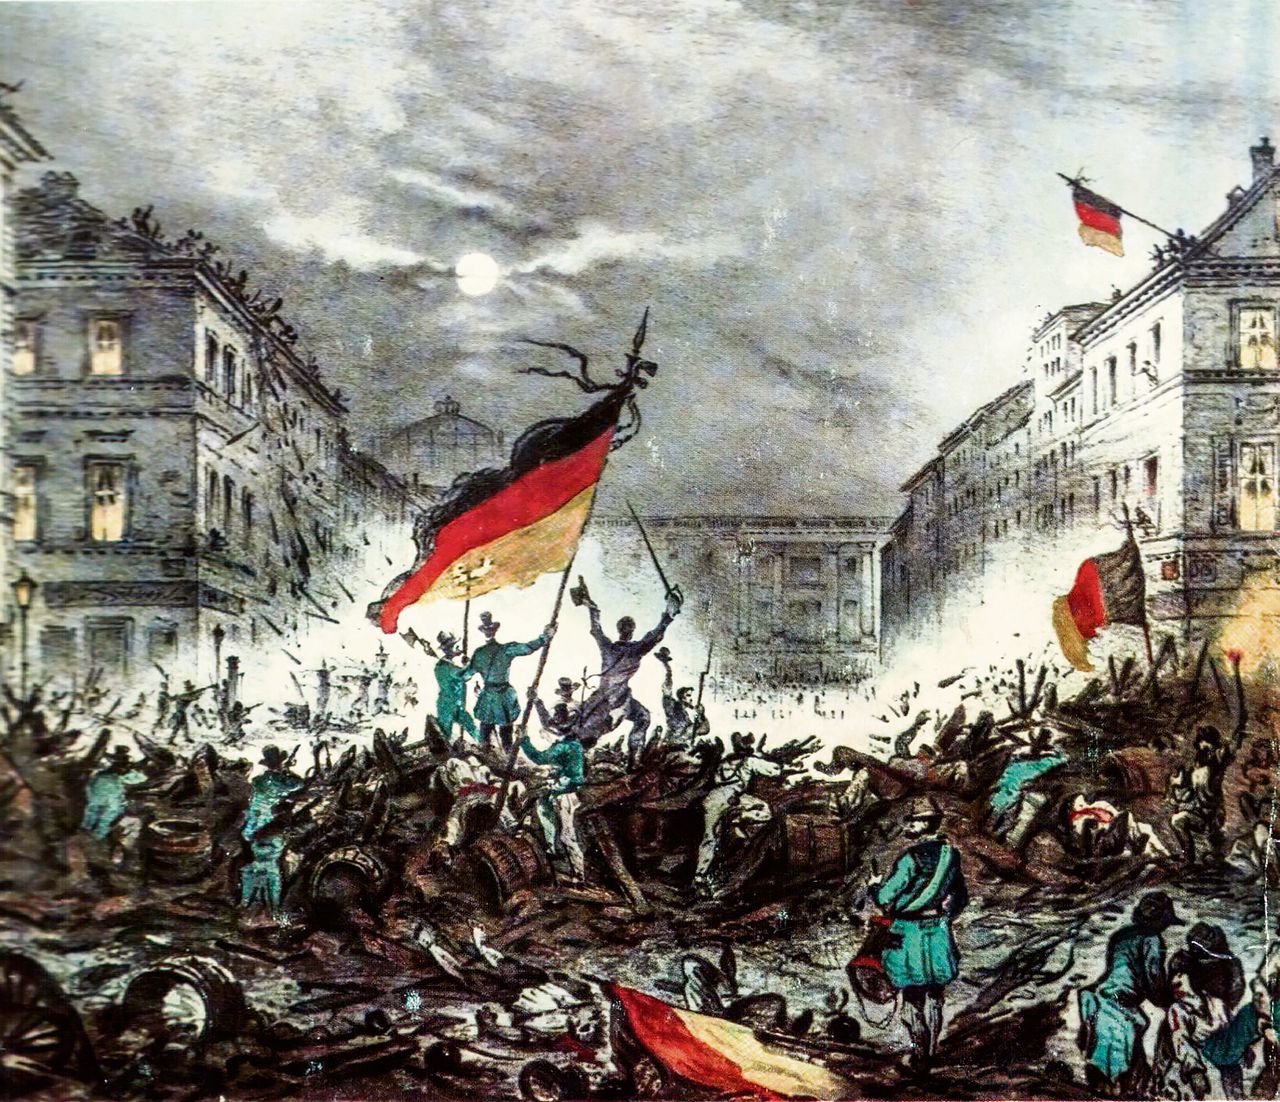 Berlijn, maart 1848. Net als elders in Europa wierpen burgers barricades op om te ageren tegen een autoritair vorstenregime.